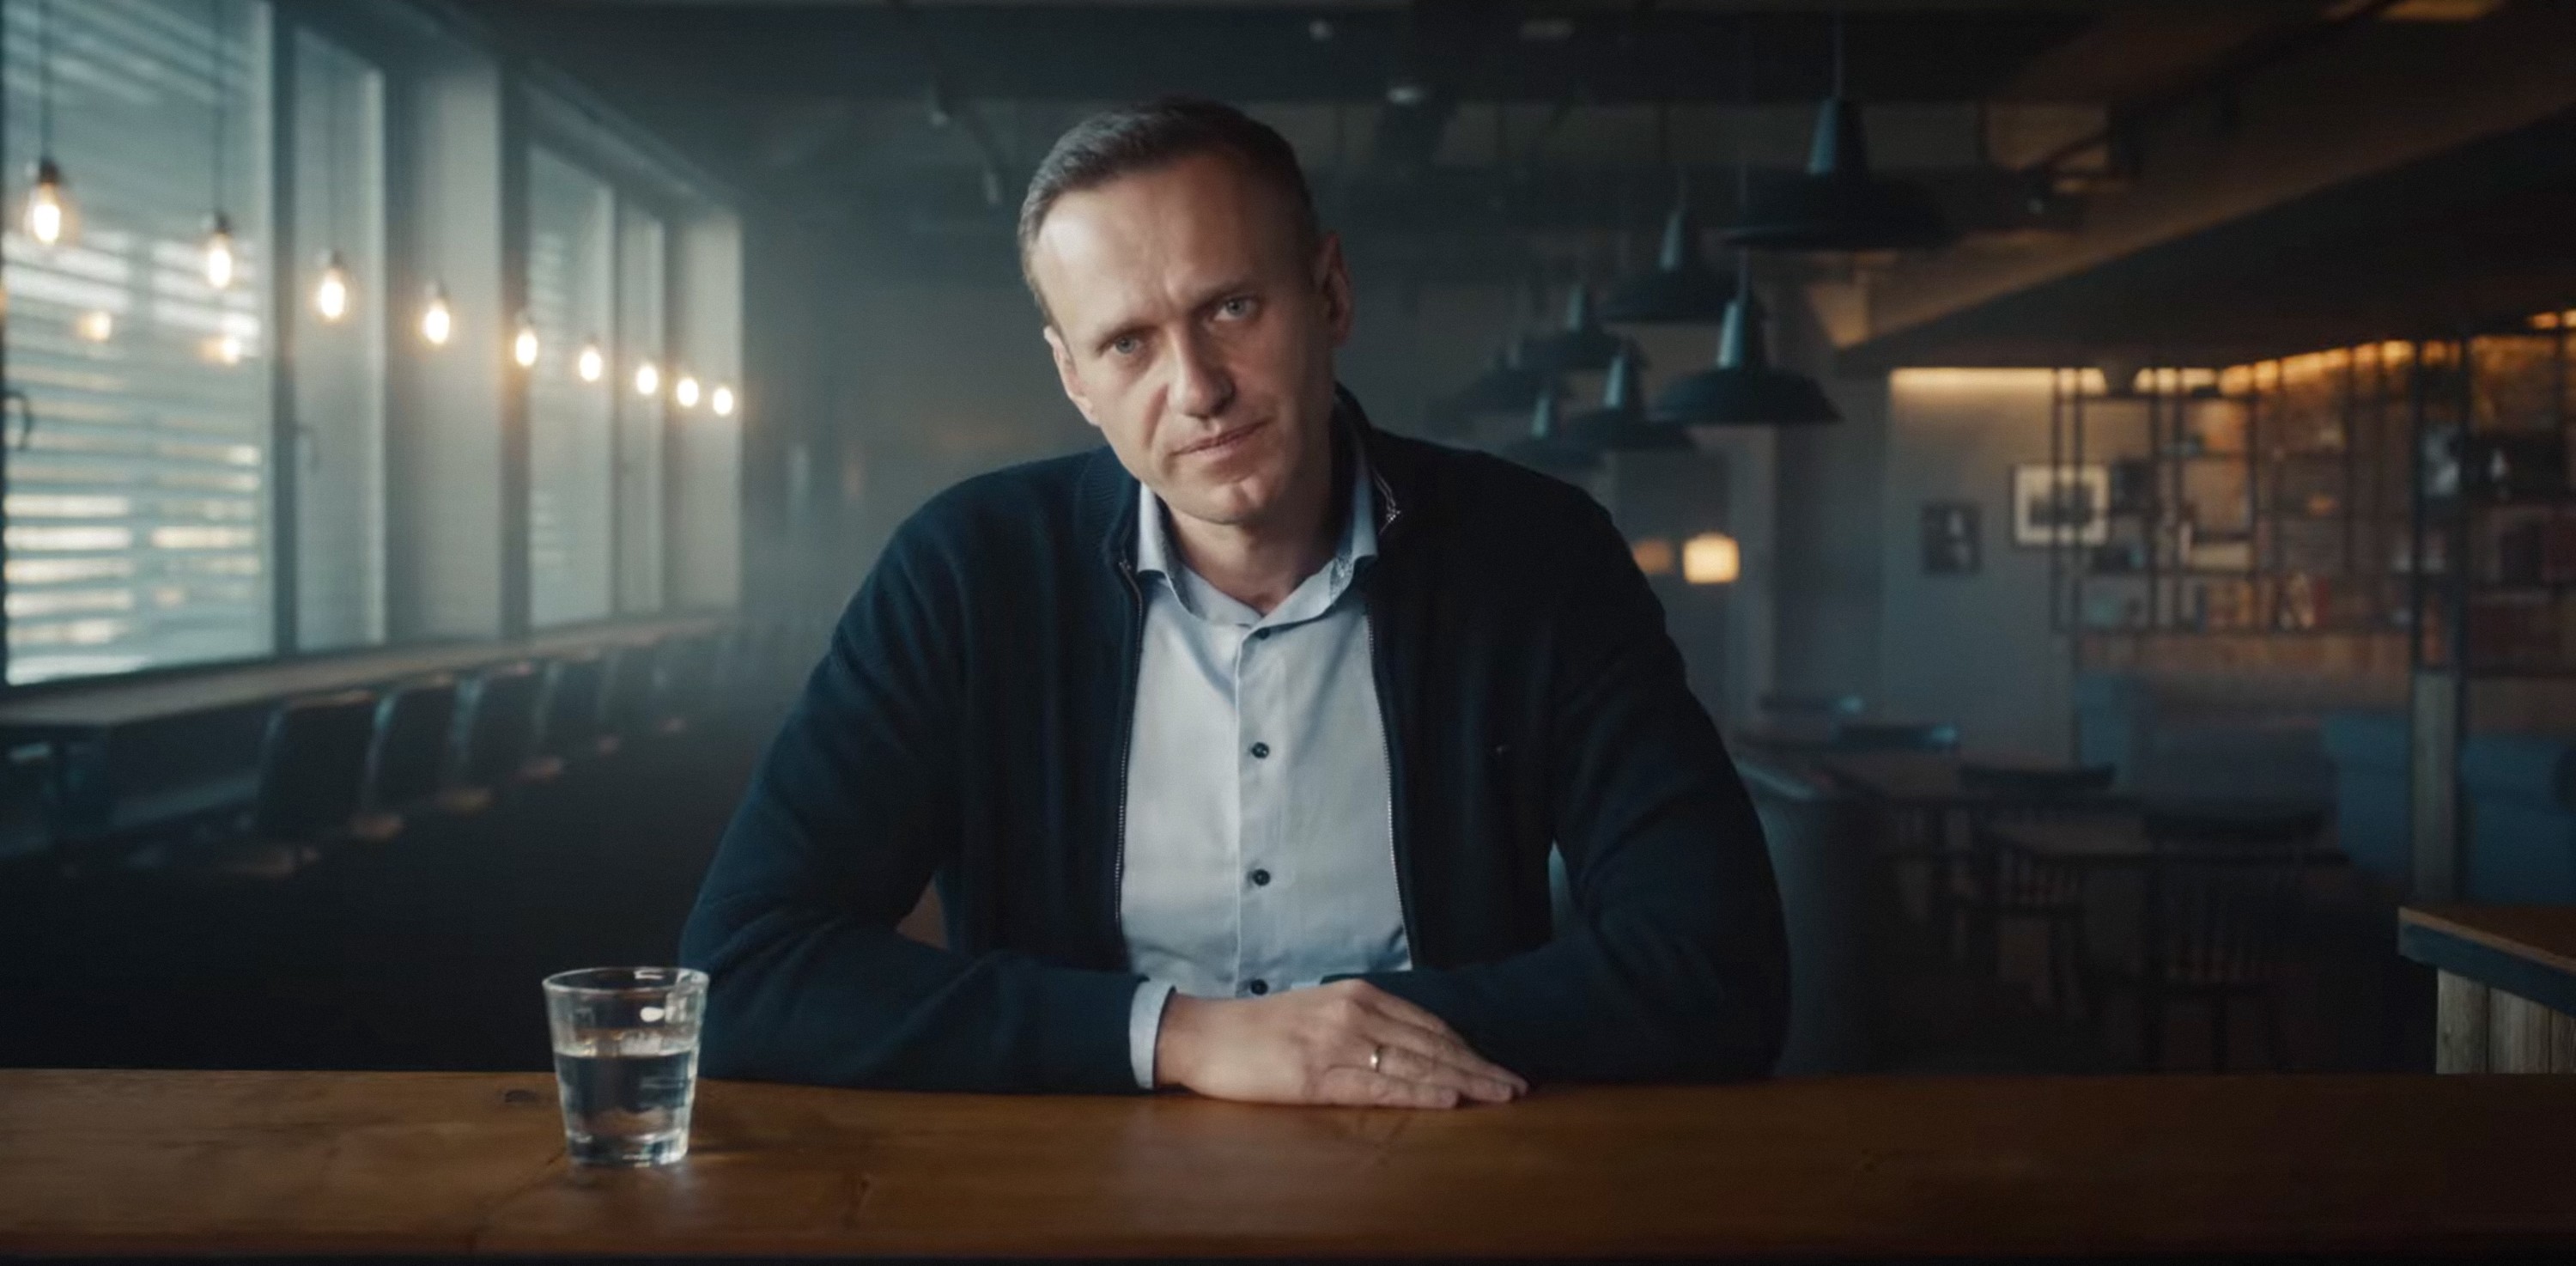 Familia lui Navalnii nu ii poate organiza o ceremonie de ramas bun pentru ca toate firmele de servicii funerare refuza